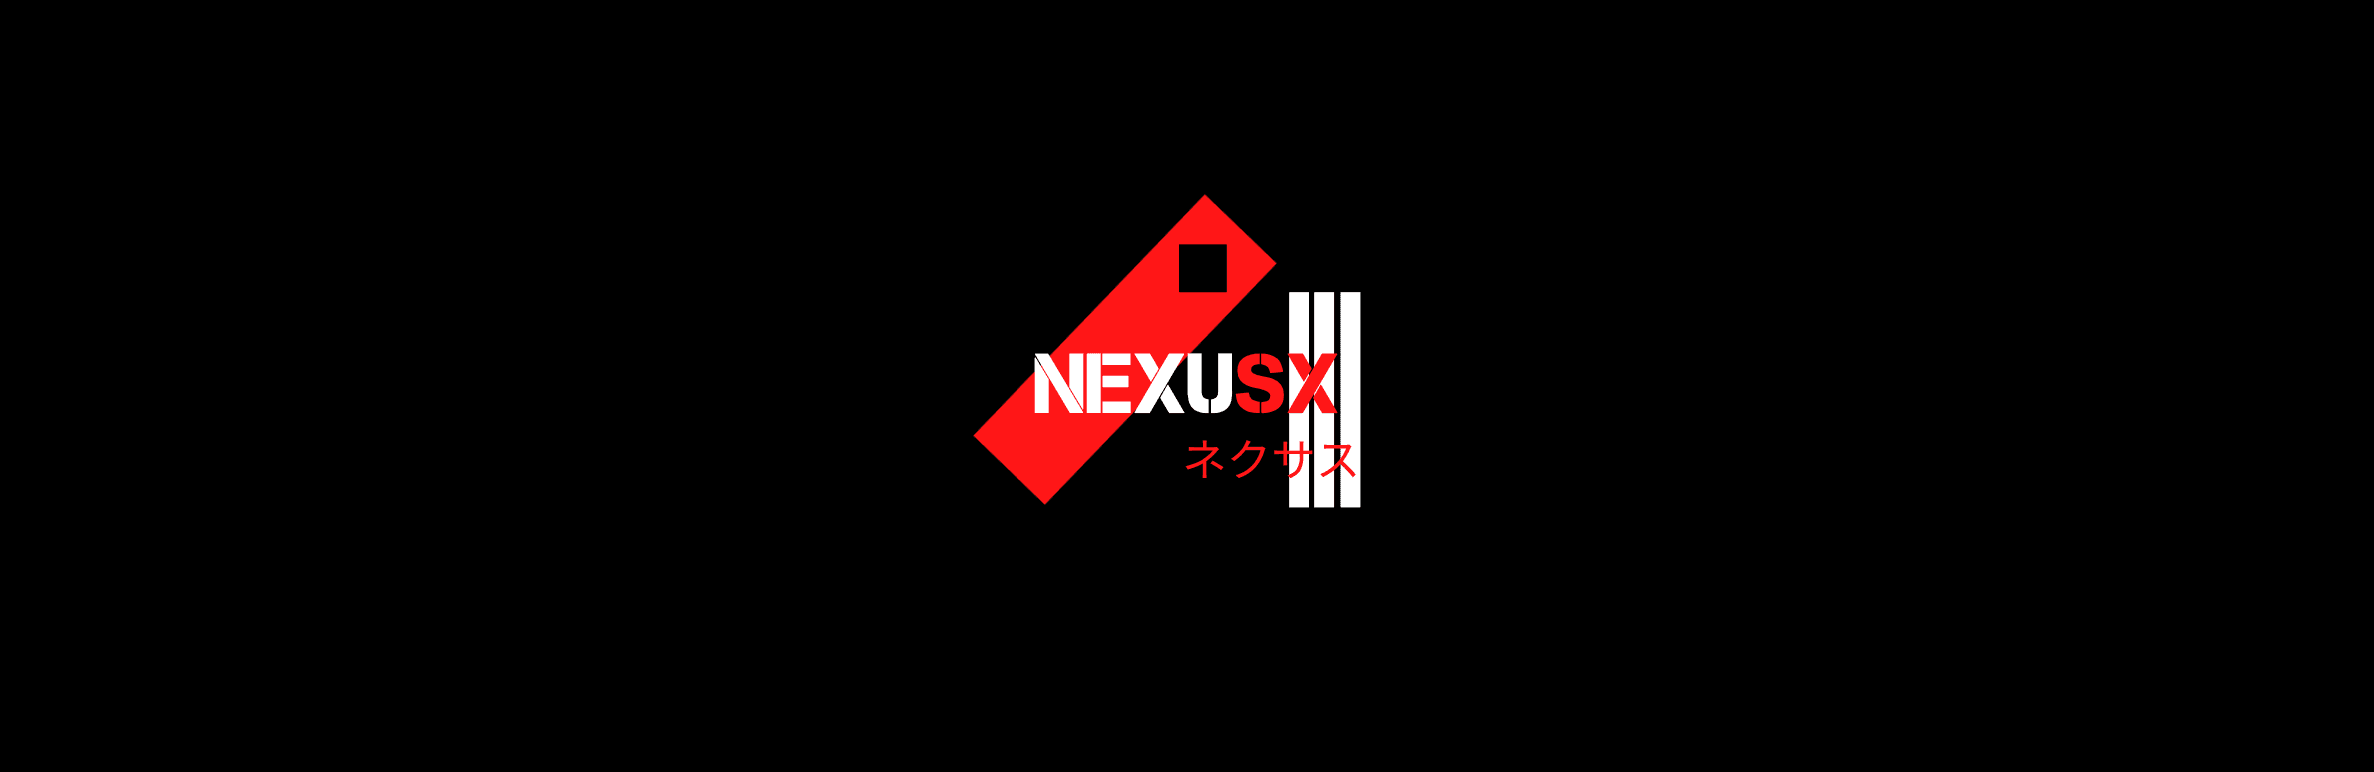 NexusX bannière